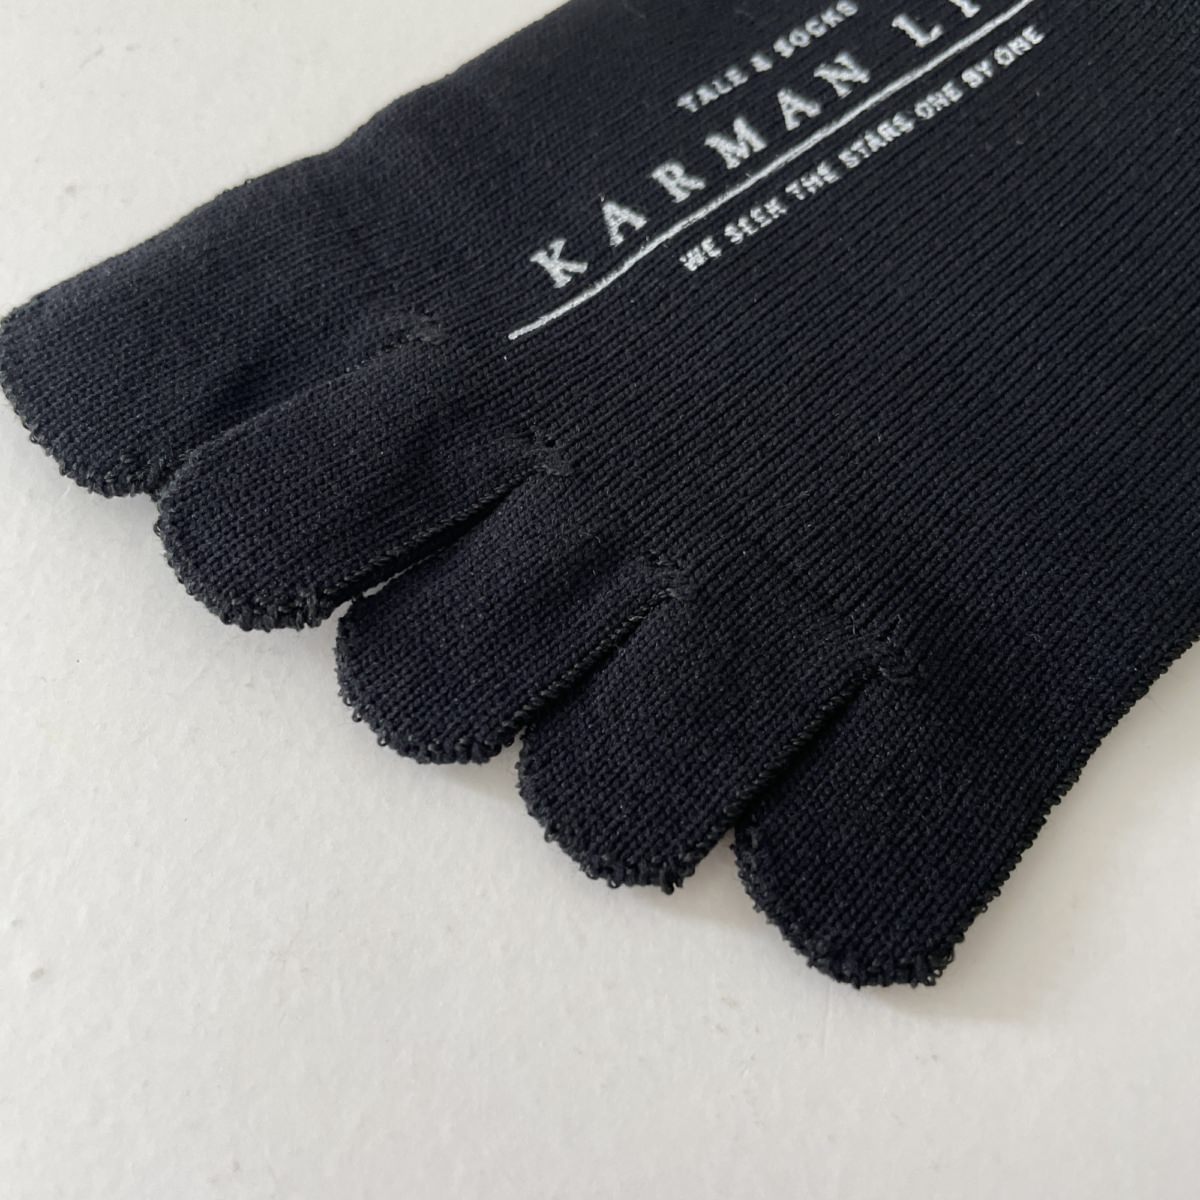 KARMAN LINE URANUS / Socks / Black / 23-25cm